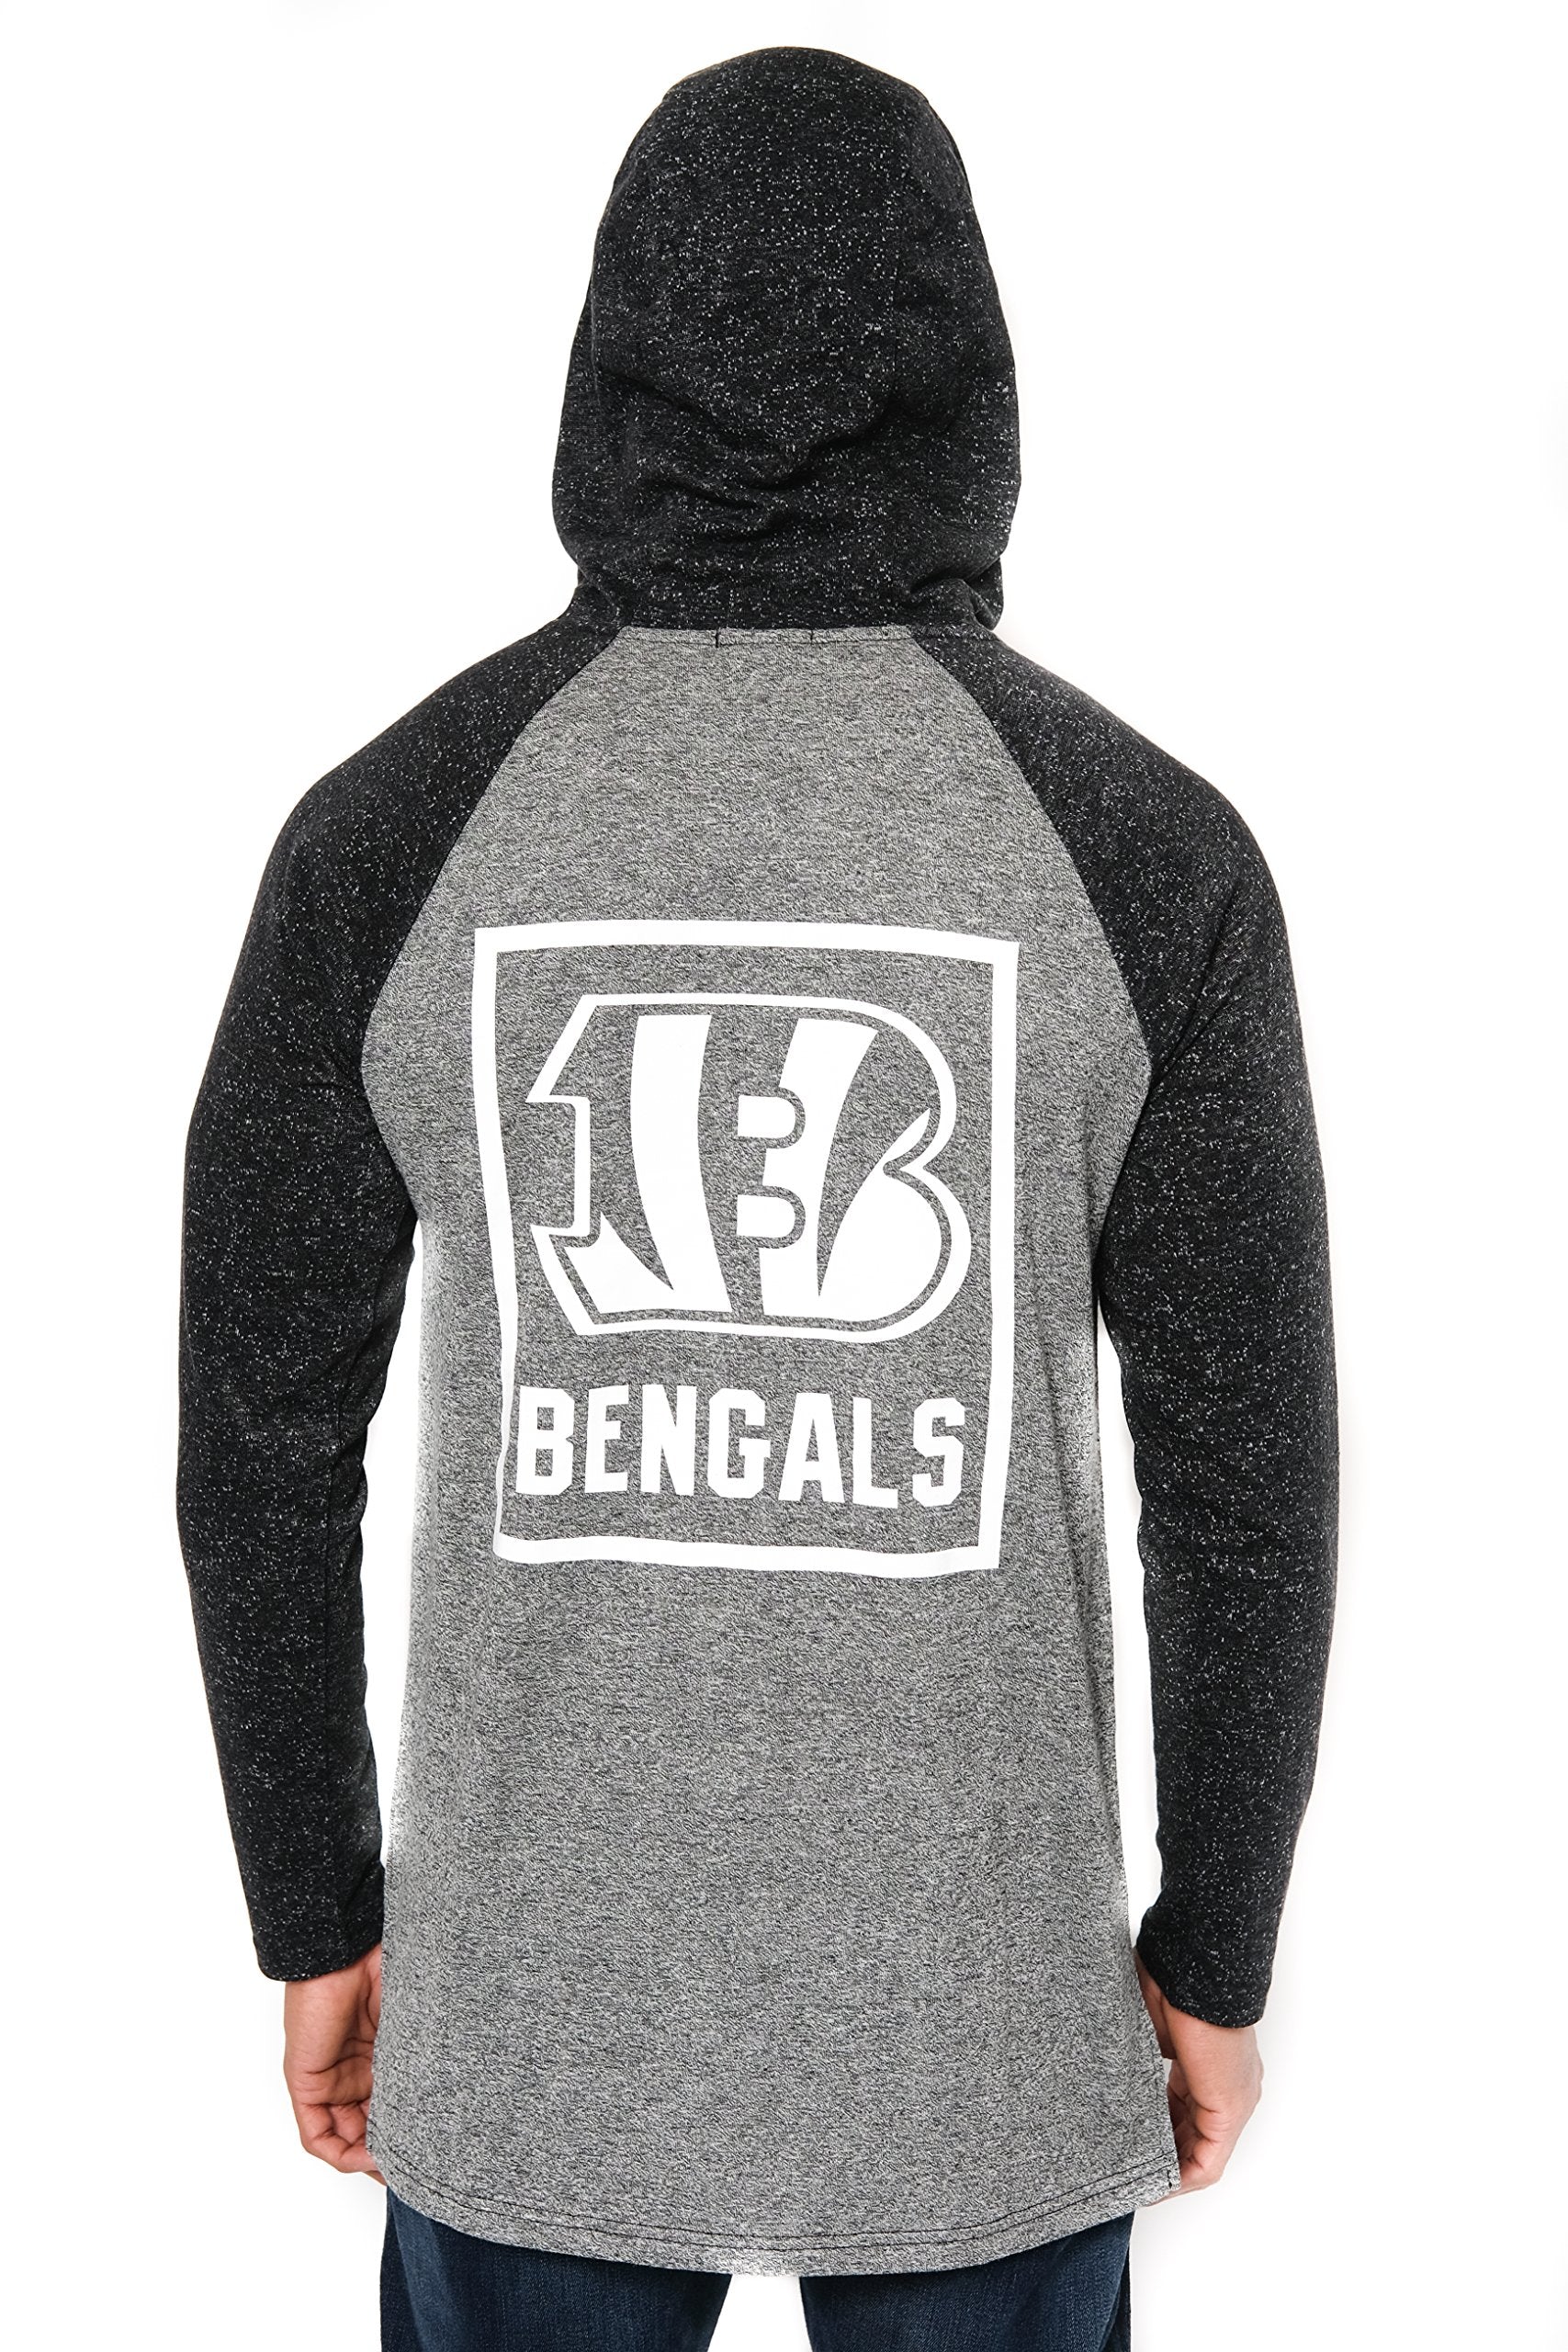 Ultra Game NFL Cincinnati Bengals Mens Fleece Hoodie Pullover Sweatshirt Henley|Cincinnati Bengals